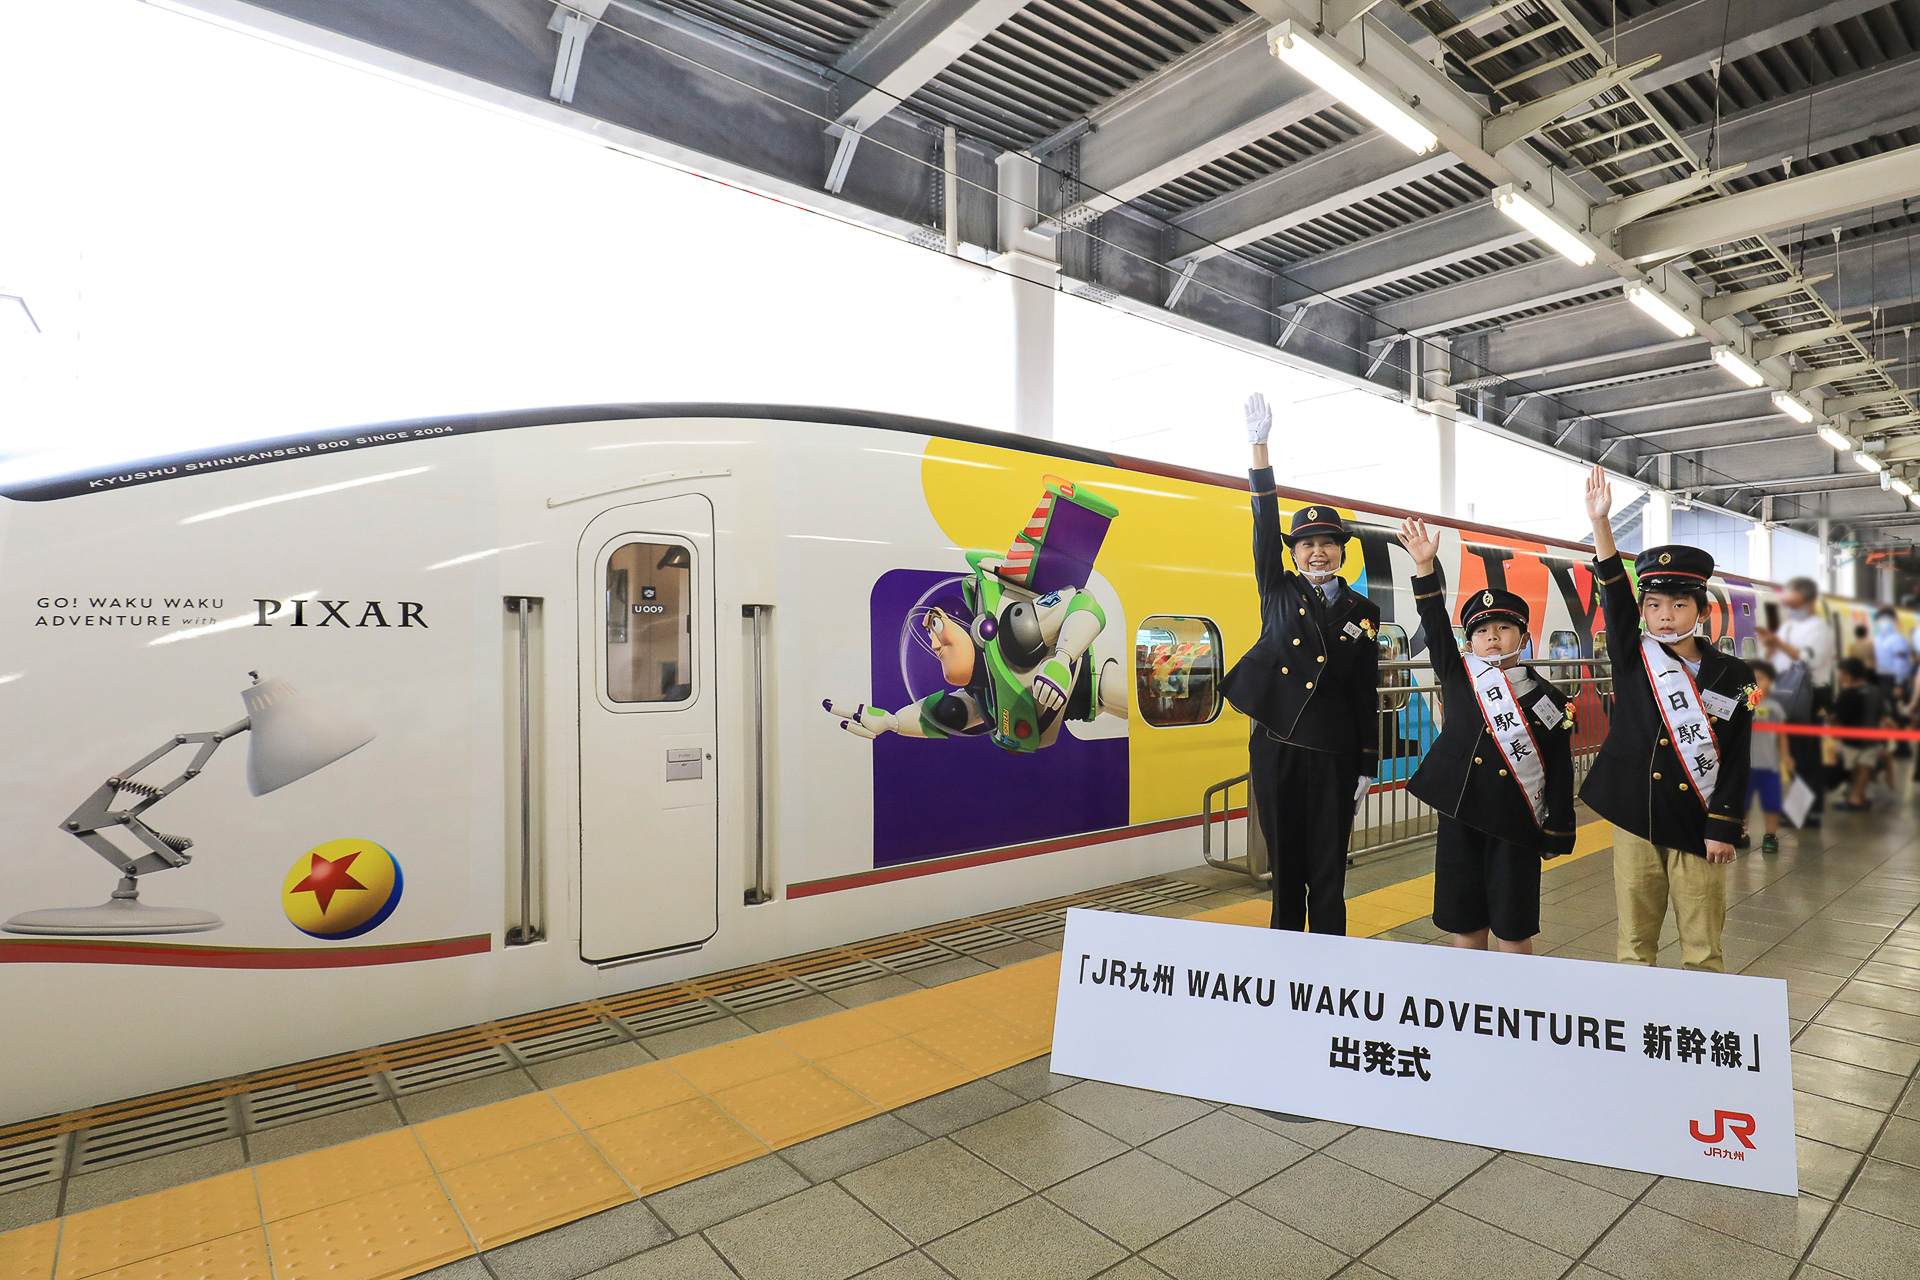 ピクサー新幹線 出発進行 Jr九州 Waku Waku Adventure 新幹線 運行開始 Go Waku Waku Adventure With Pixar プロジェクト トラベル Watch